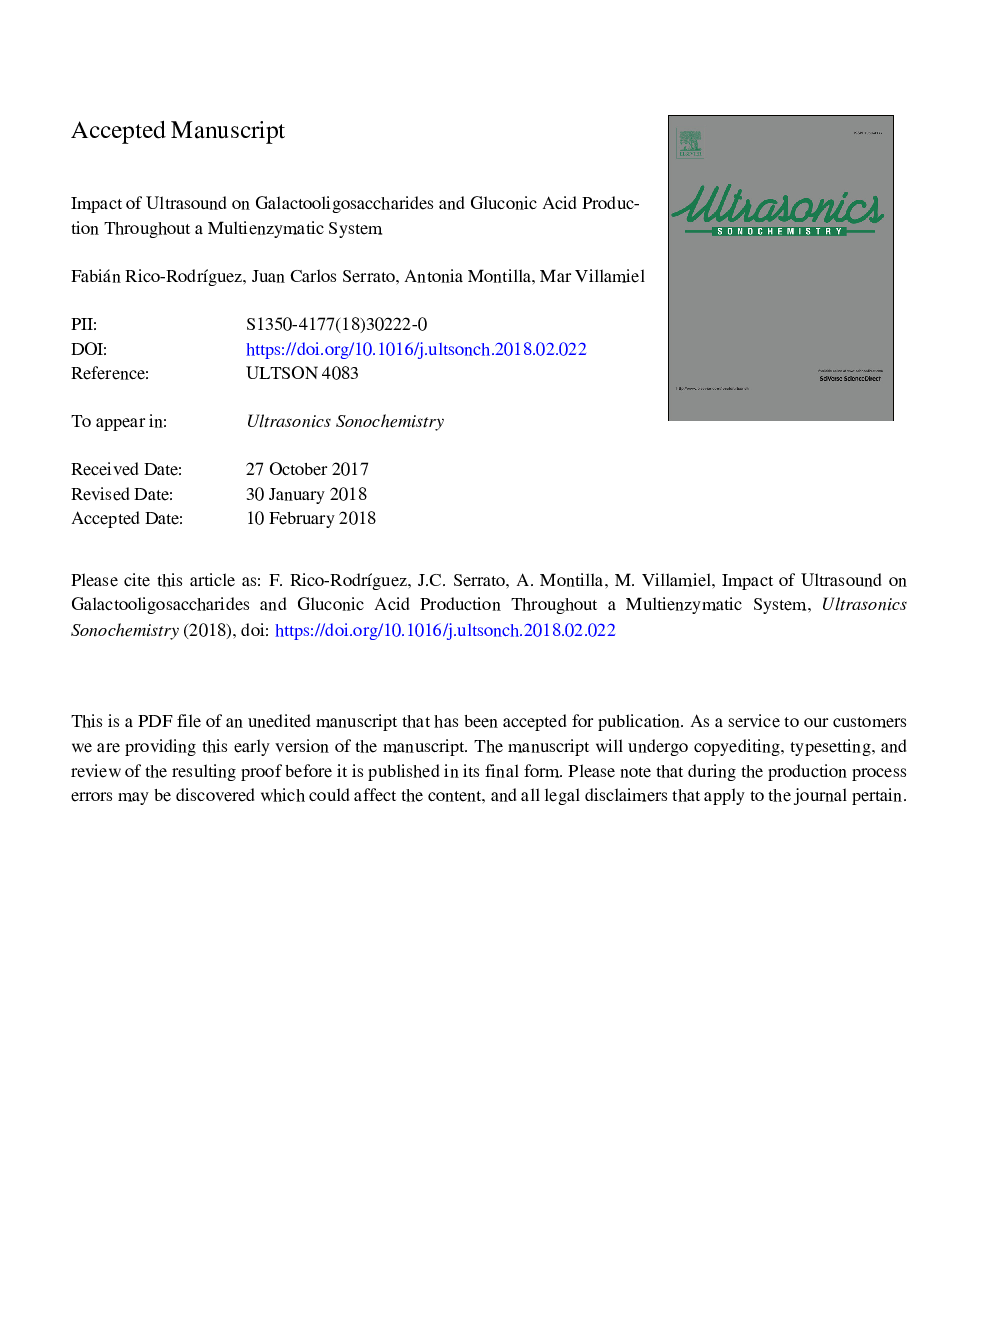 اثر اولتراسوند بر گالاکتولیگوساکارید ها و تولید اسید گلوکونیک در یک سیستم چندزمانی 